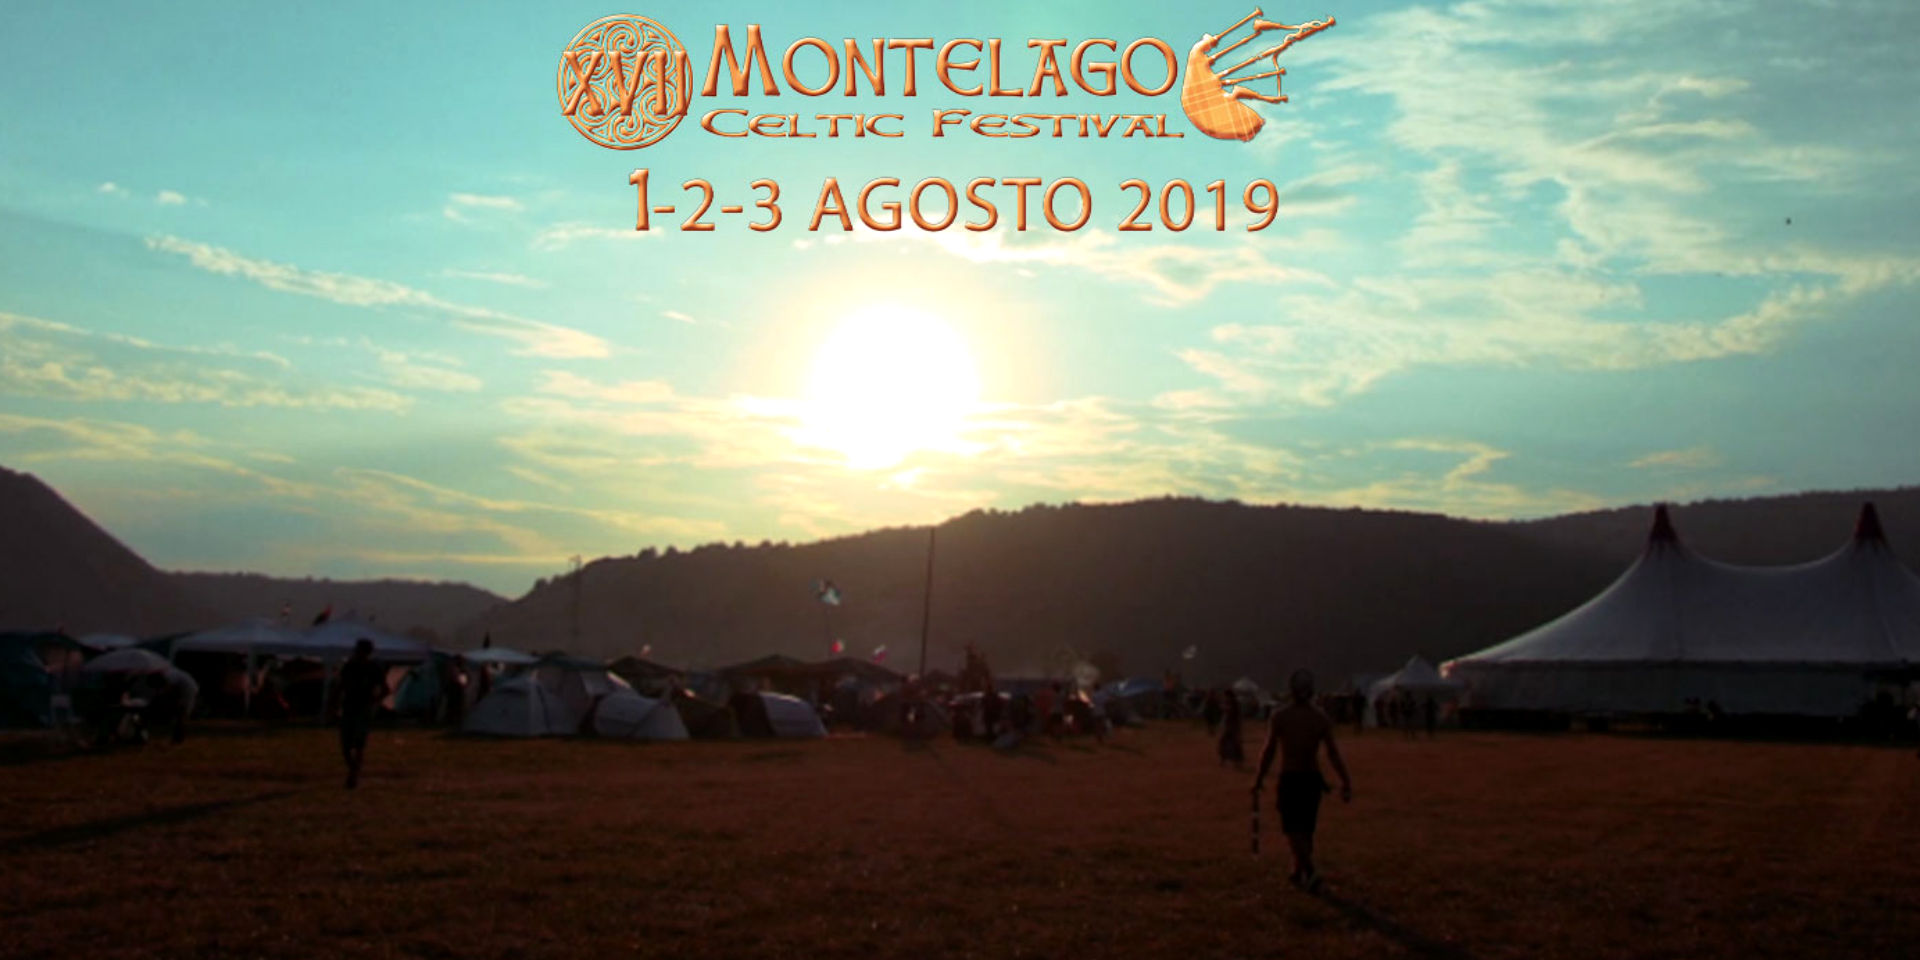 Montelago Celtic Festival 2019